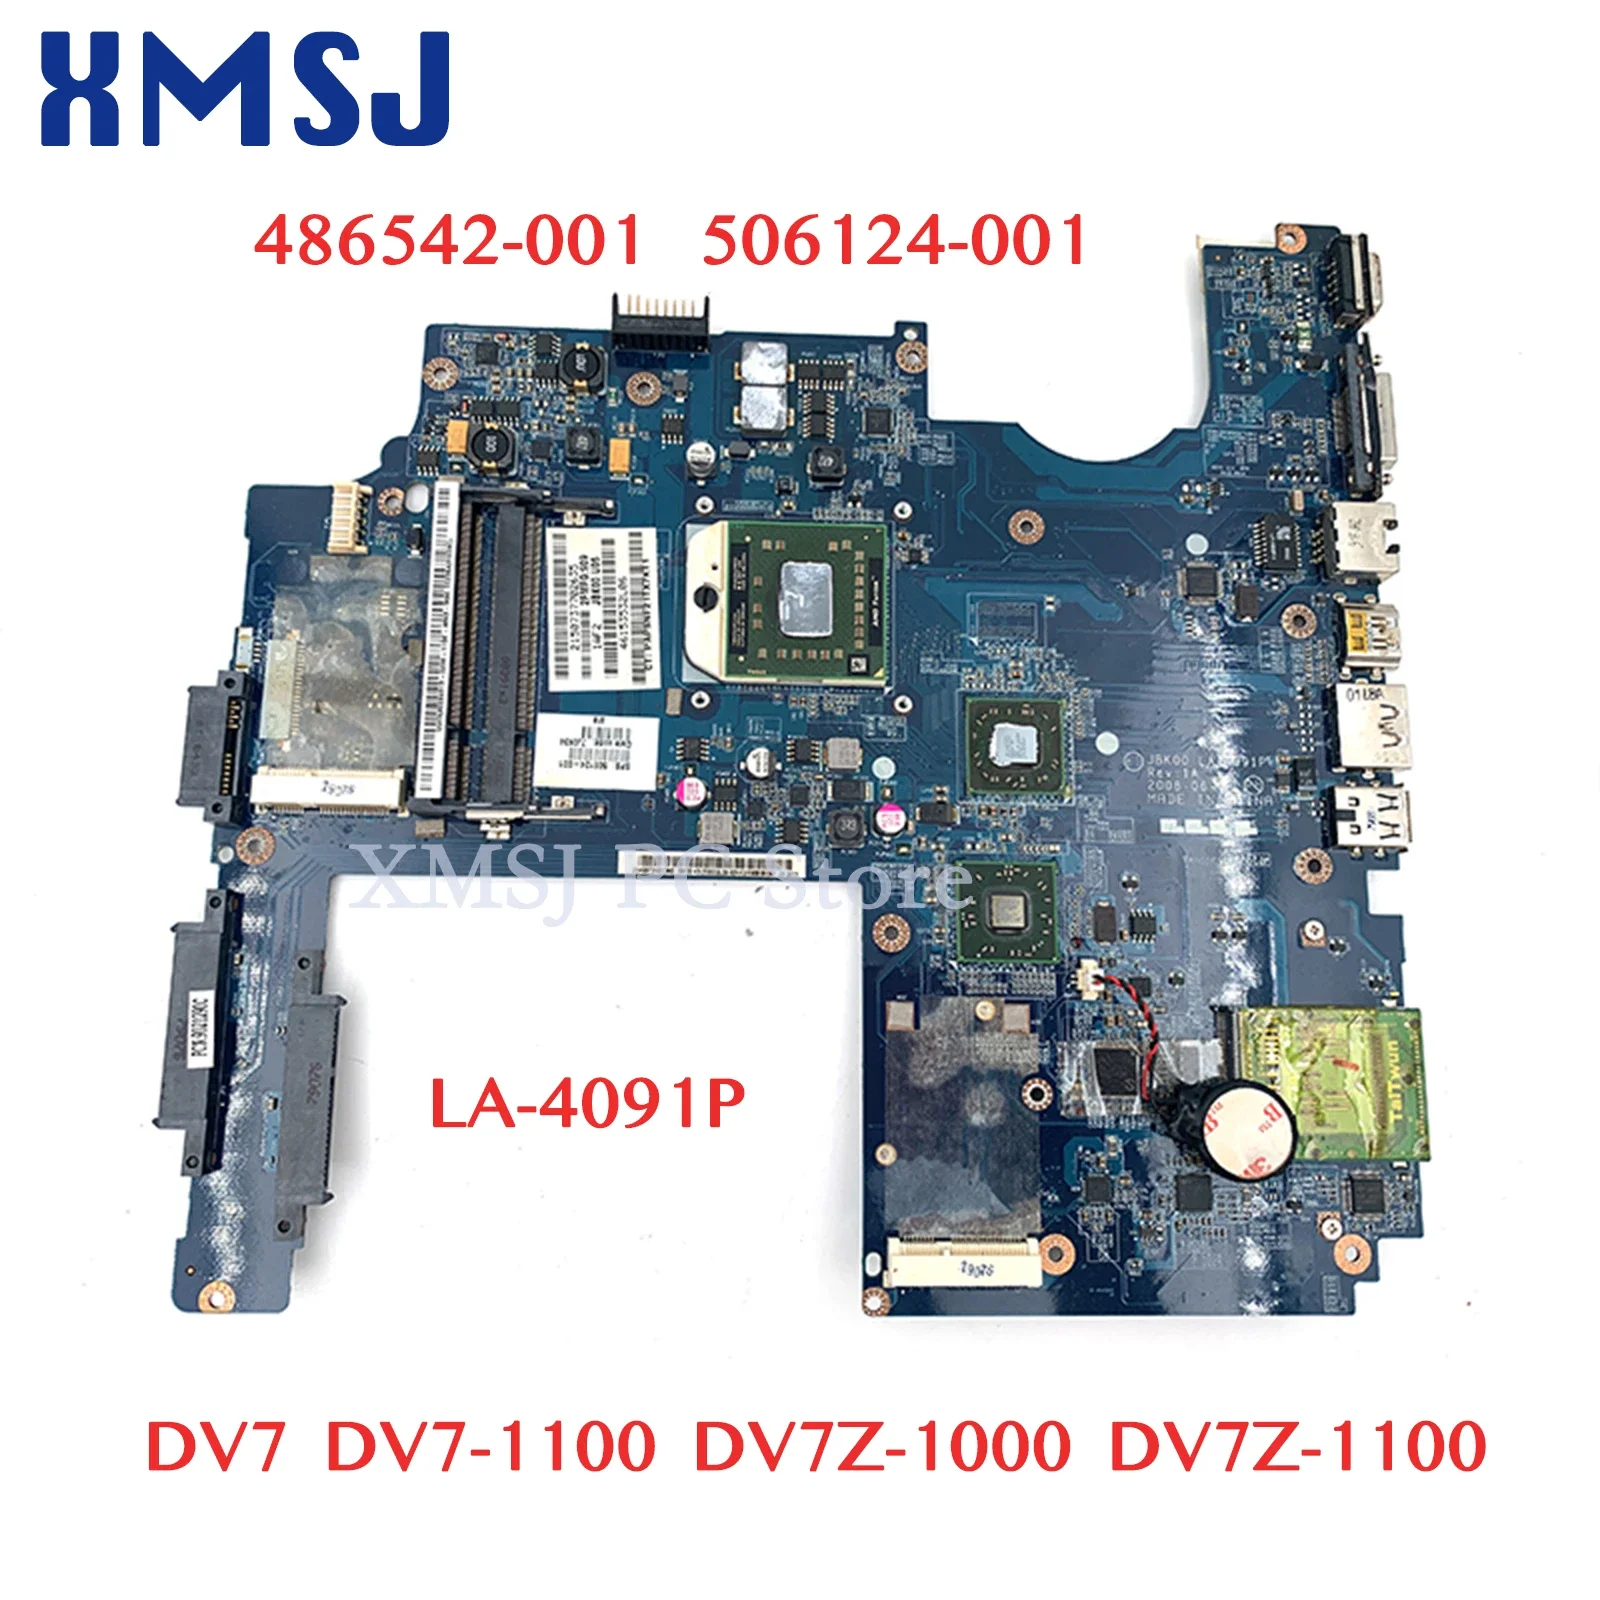 

XMSJ For Hp Pavilion DV7 Dv7-1100 Dv7z-1000 Dv7z-1100 Laptop Motherboard 486542-001 506124-001 JBK00 LA-4091P DDR2 Free CPU